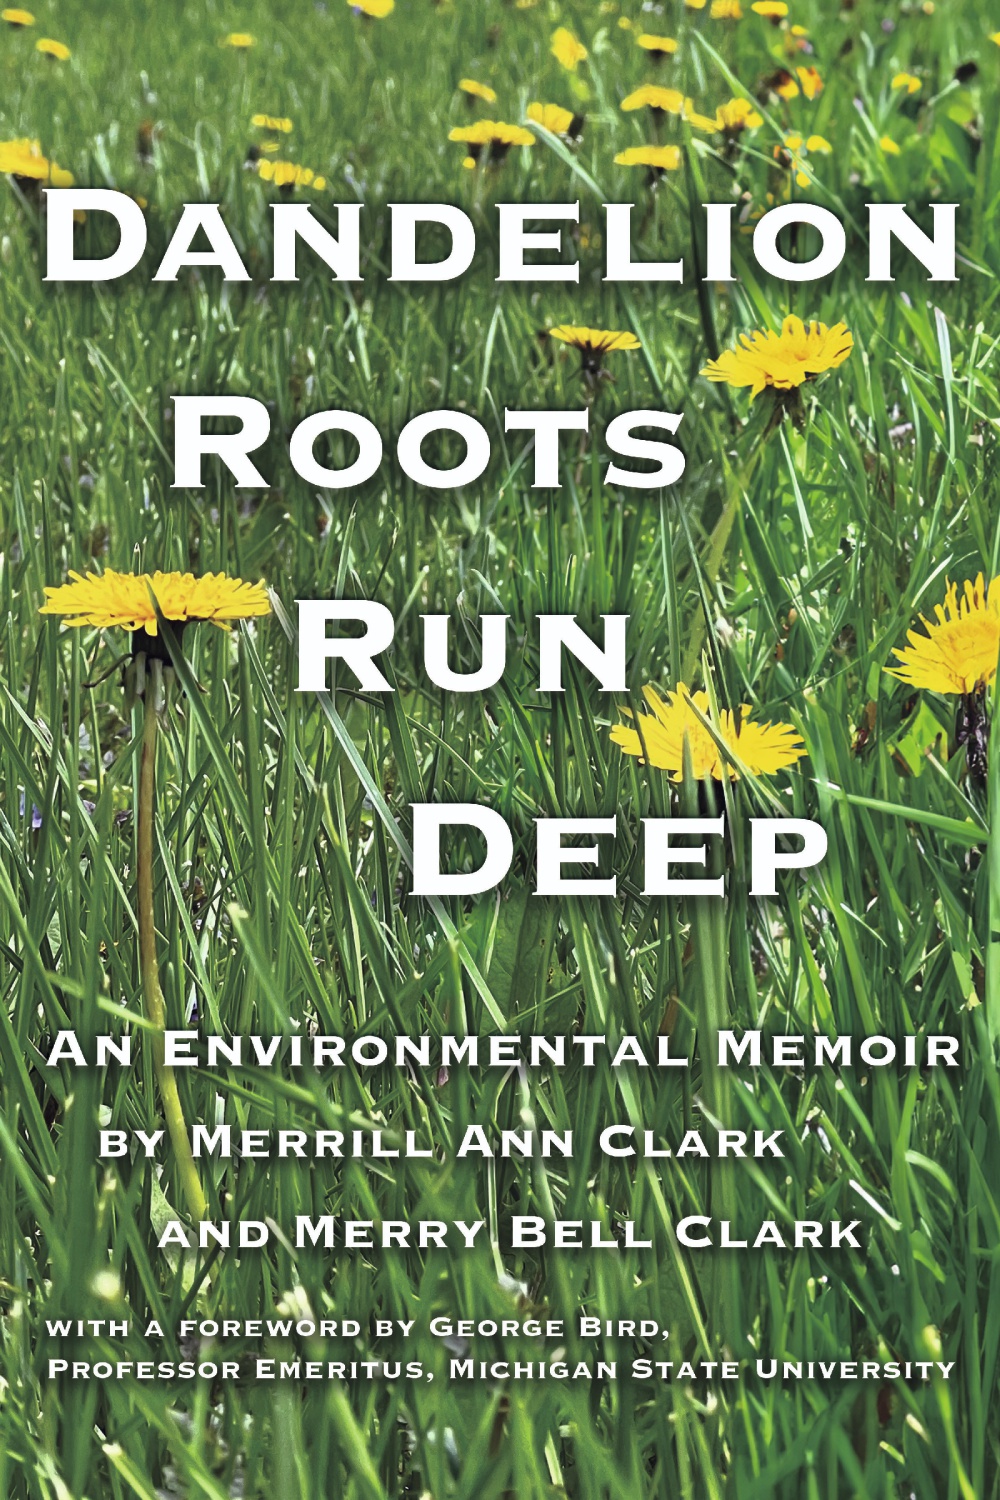 "Dandelion Roots Run Deep" by Merrill Ann Clark and Merry Bell Clark